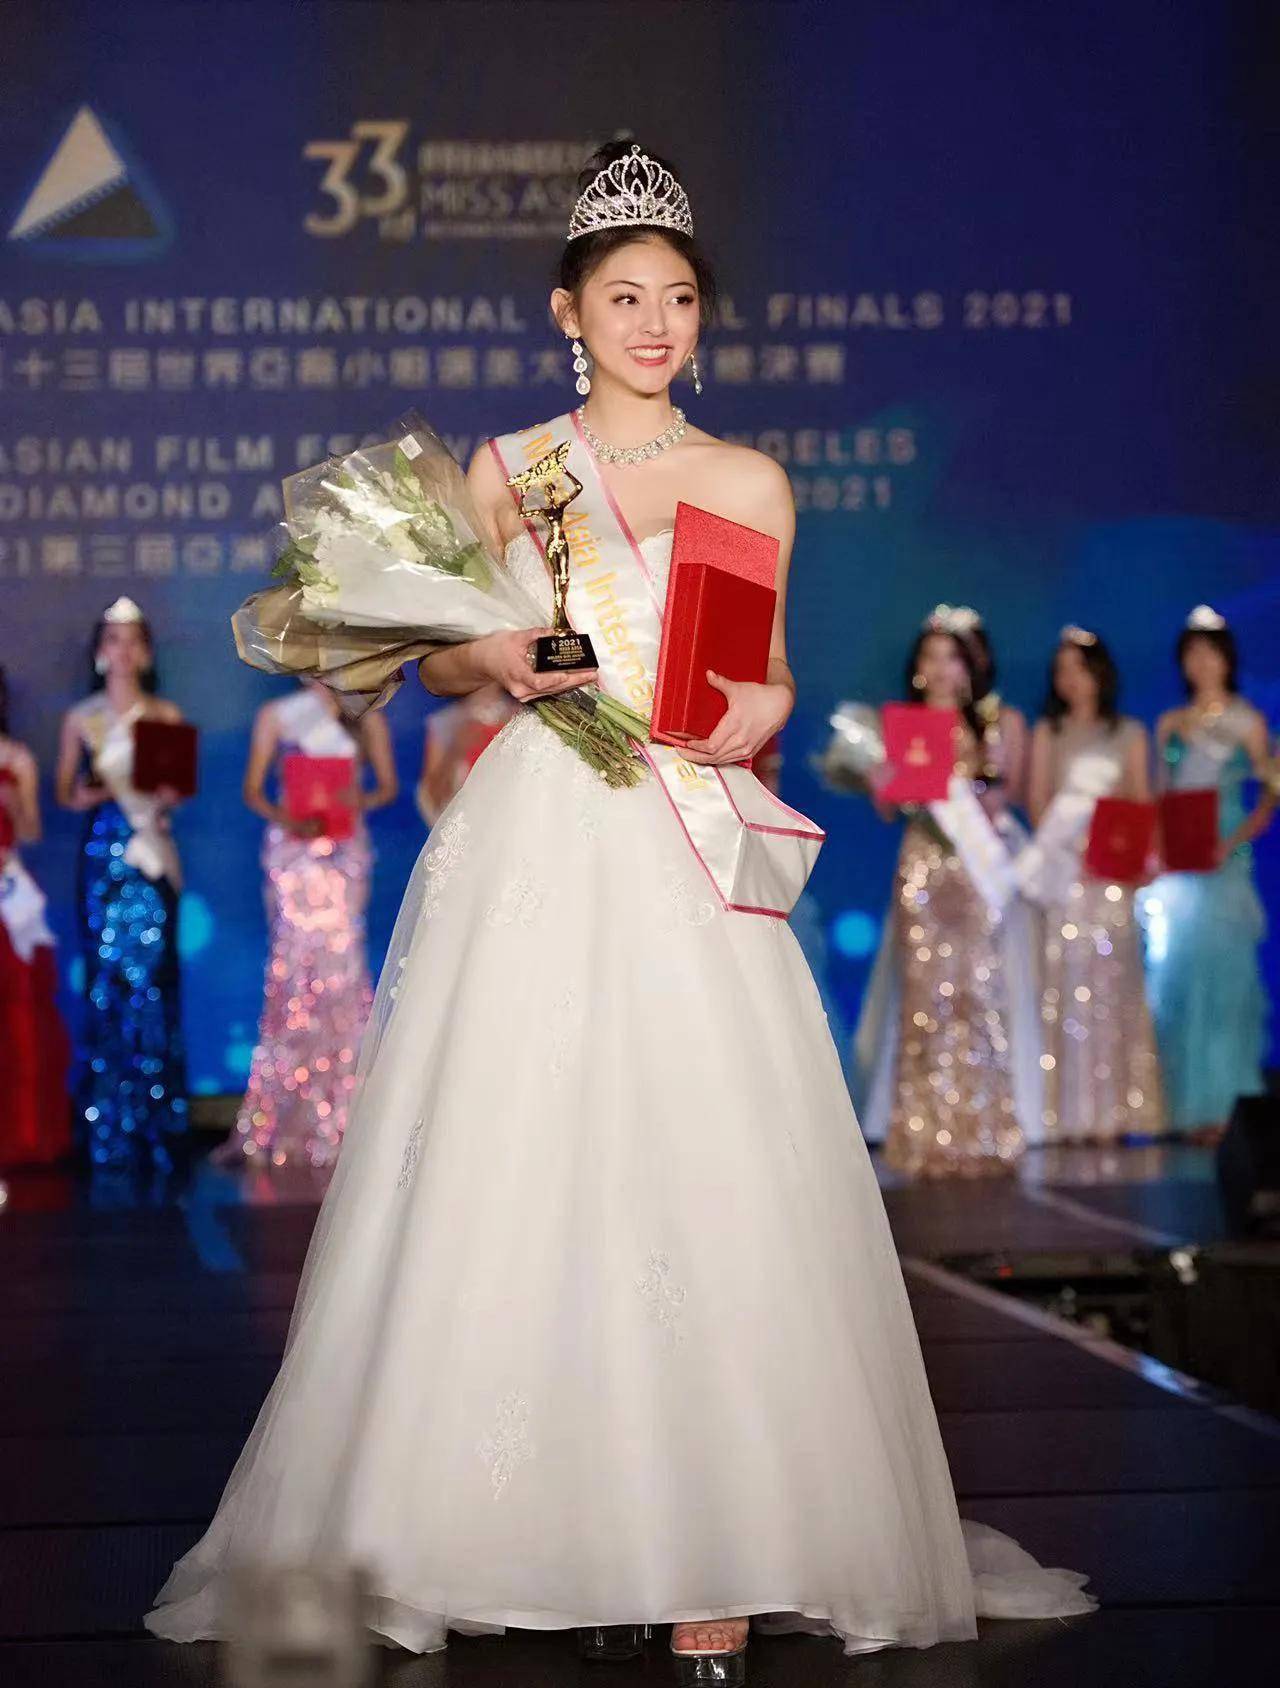 第33届世界亚裔小姐选美大赛全球总决赛 陶思航摘冠